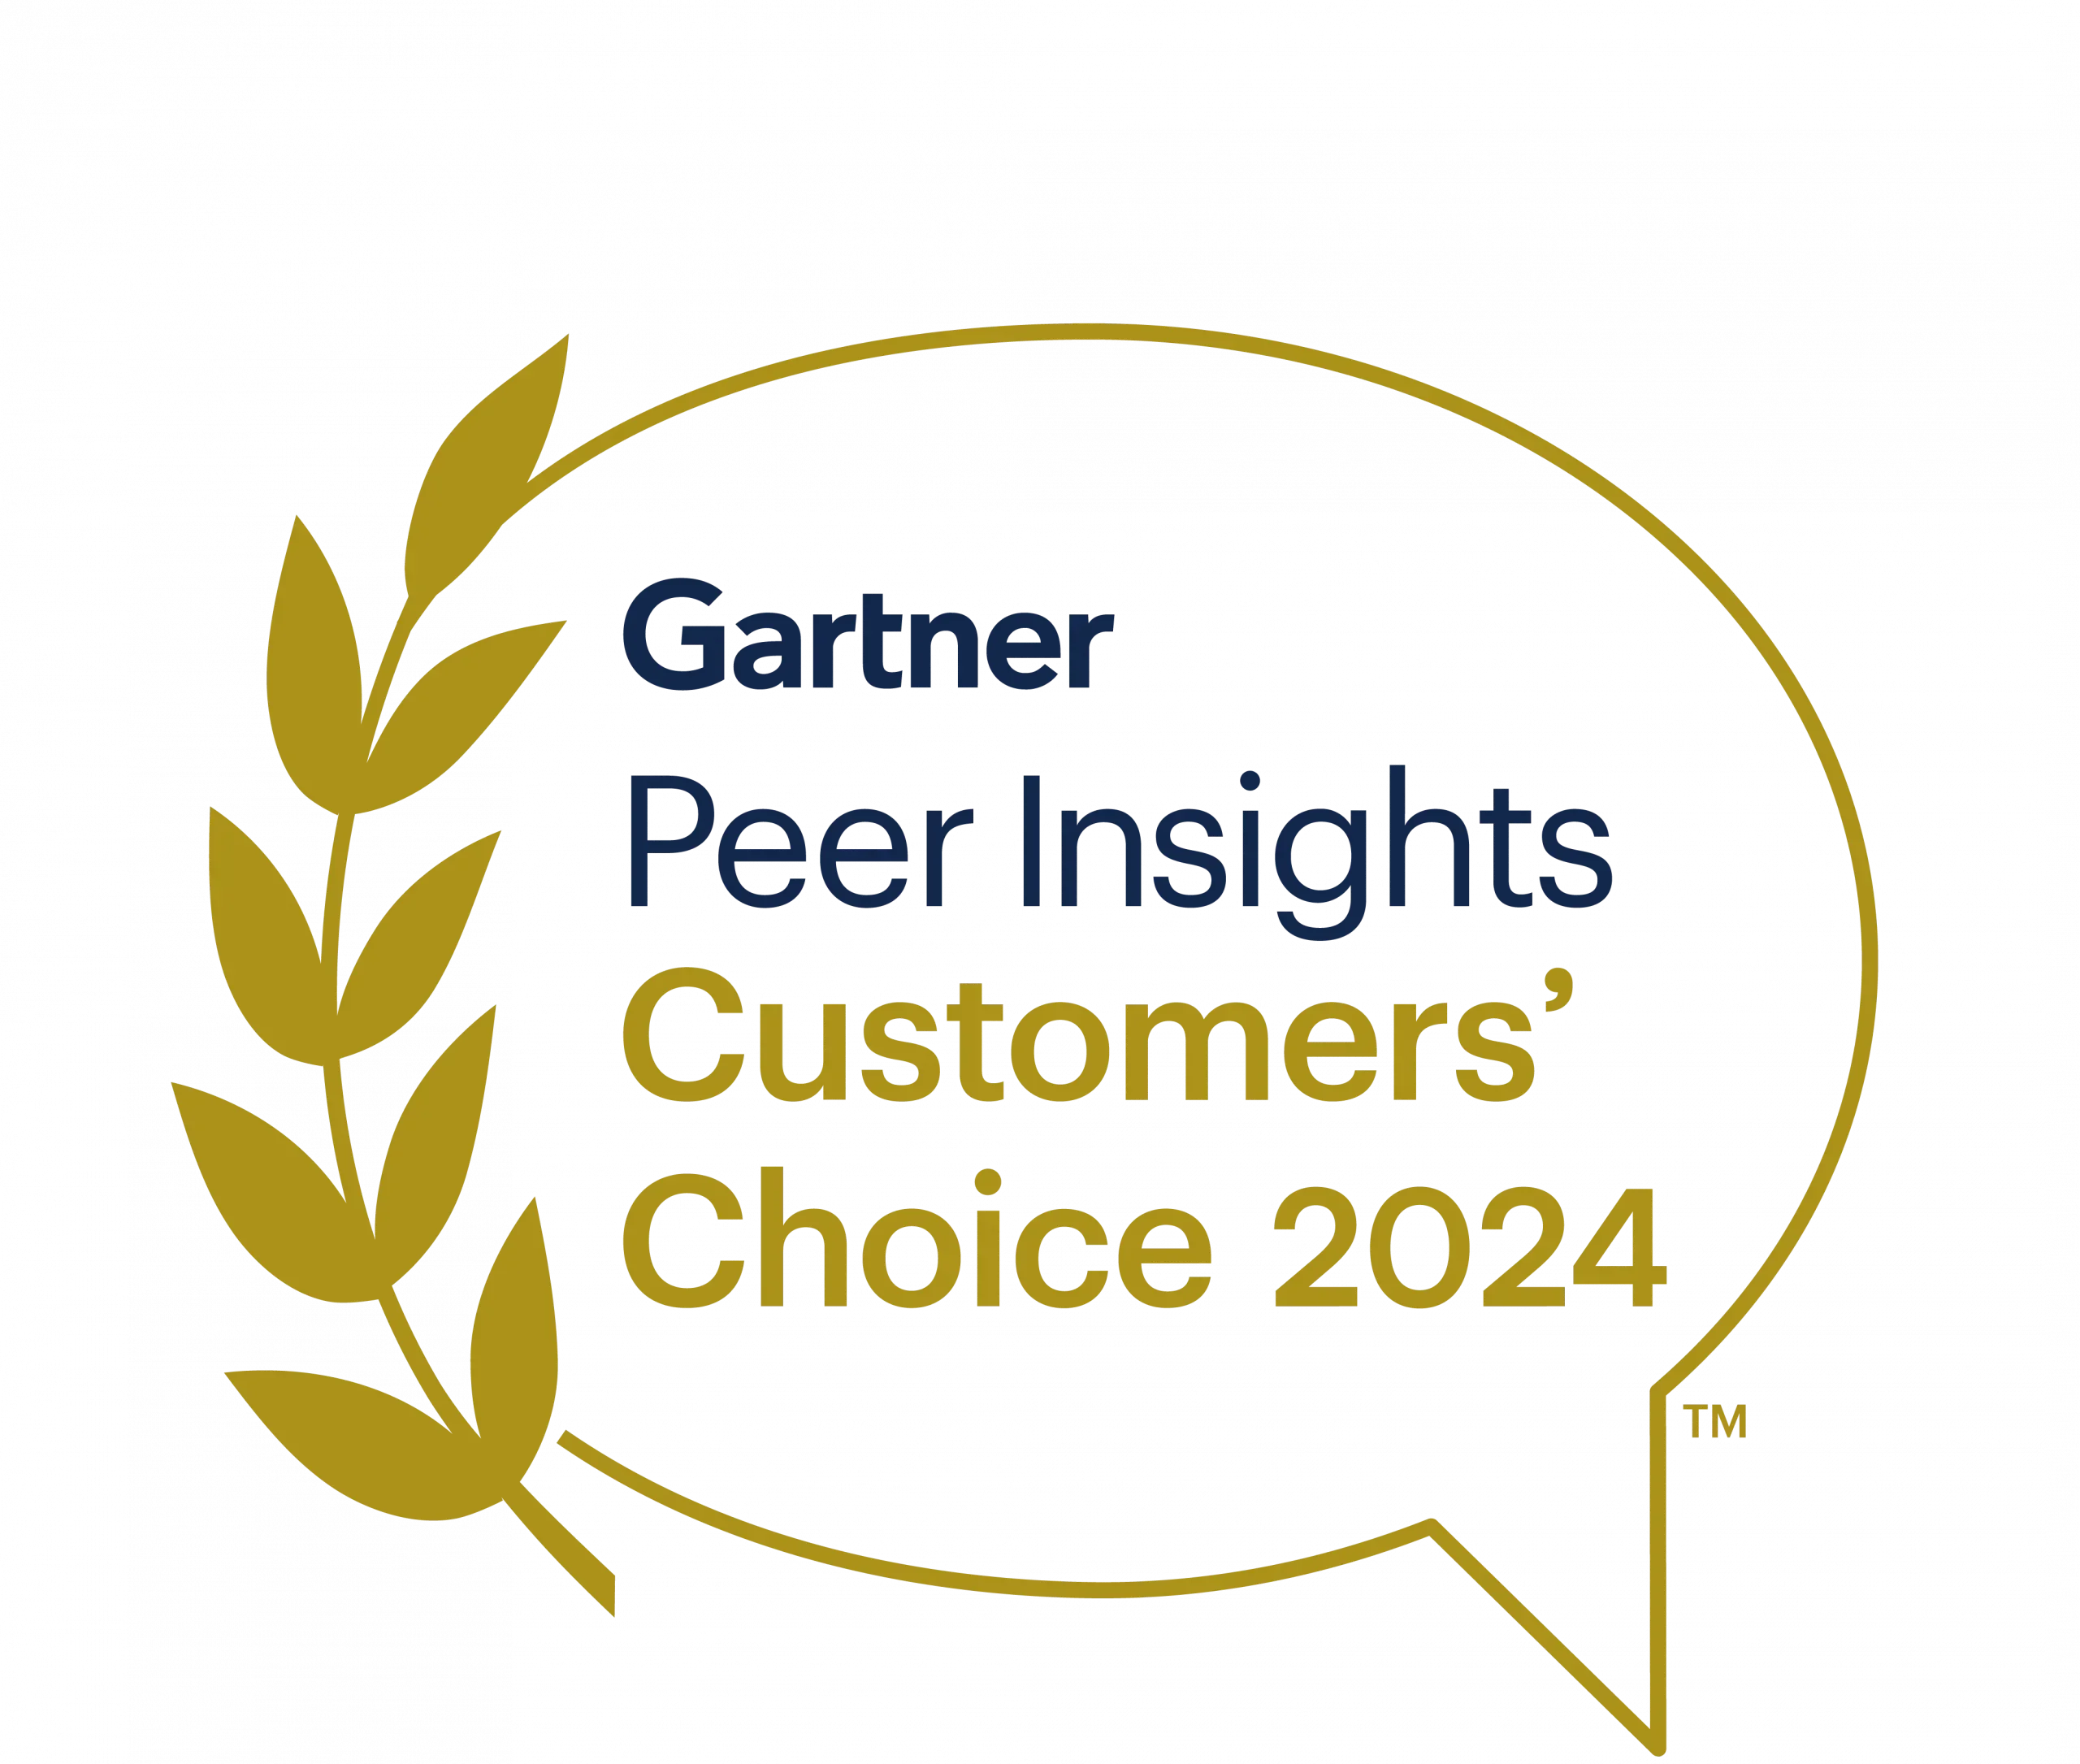 Gartner Peer Insights 2024 logo